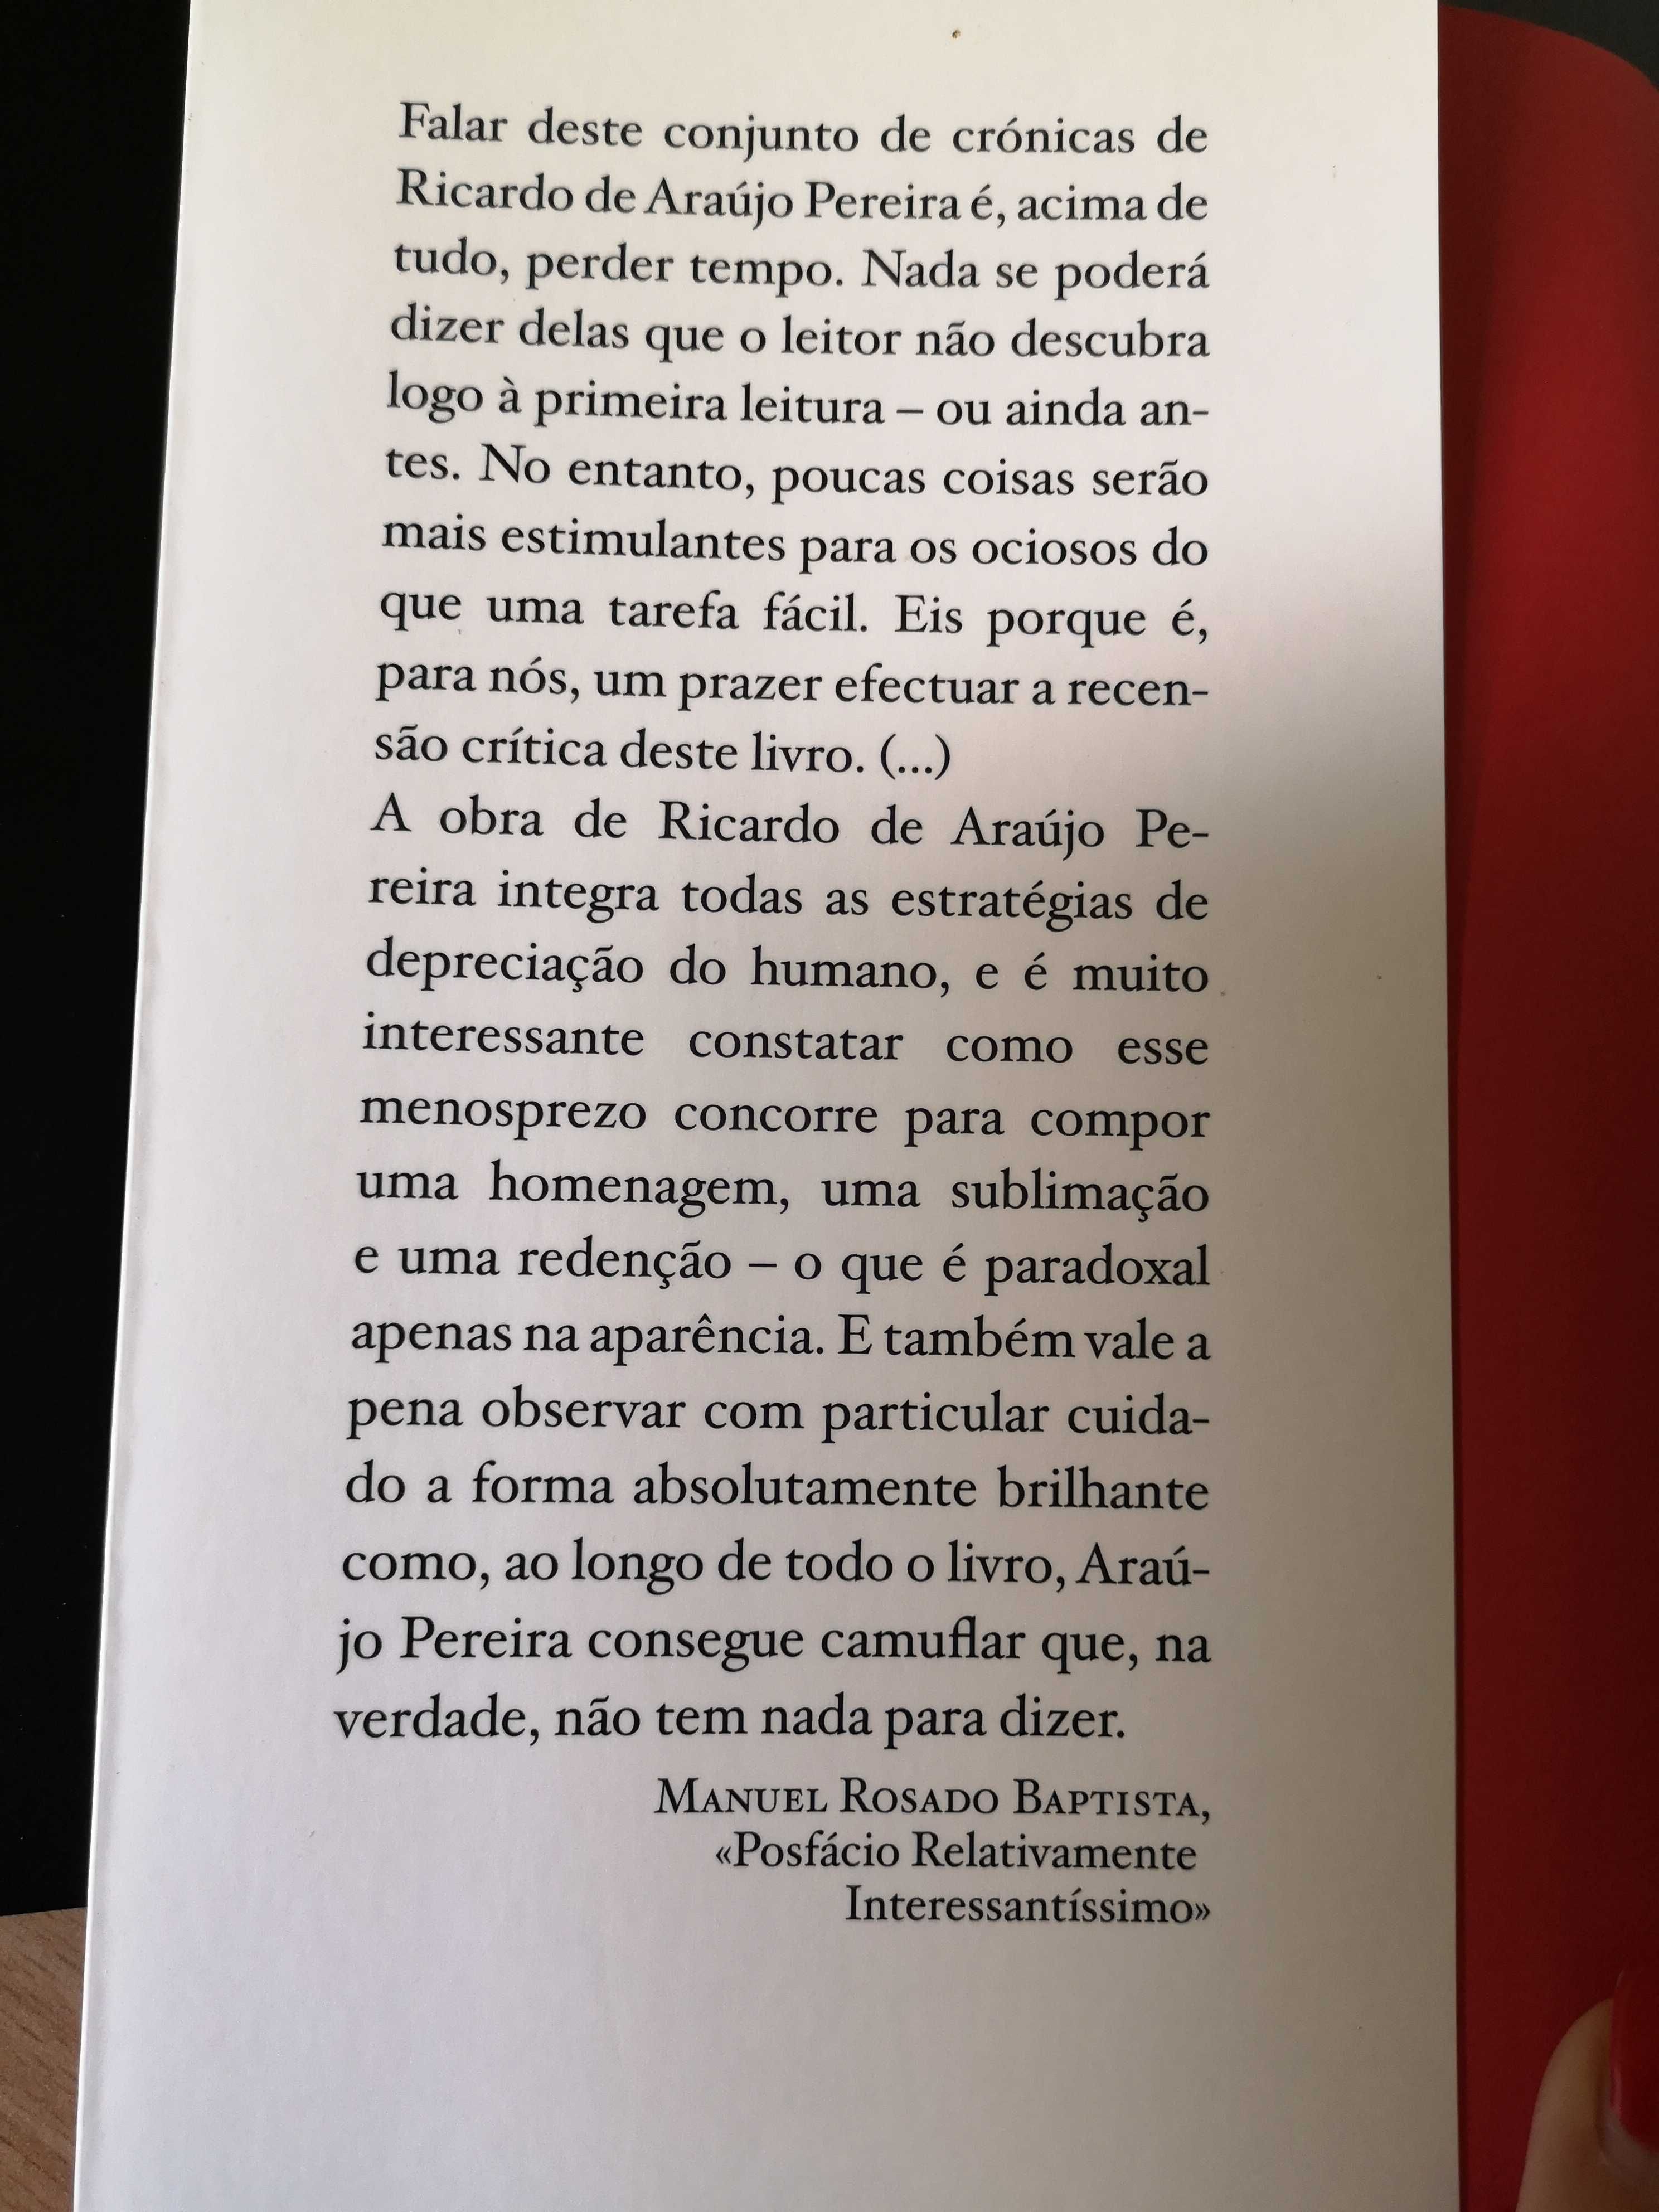 Livro "Boca do Inferno" de Ricardo Araújo Pereira - 1ª edição